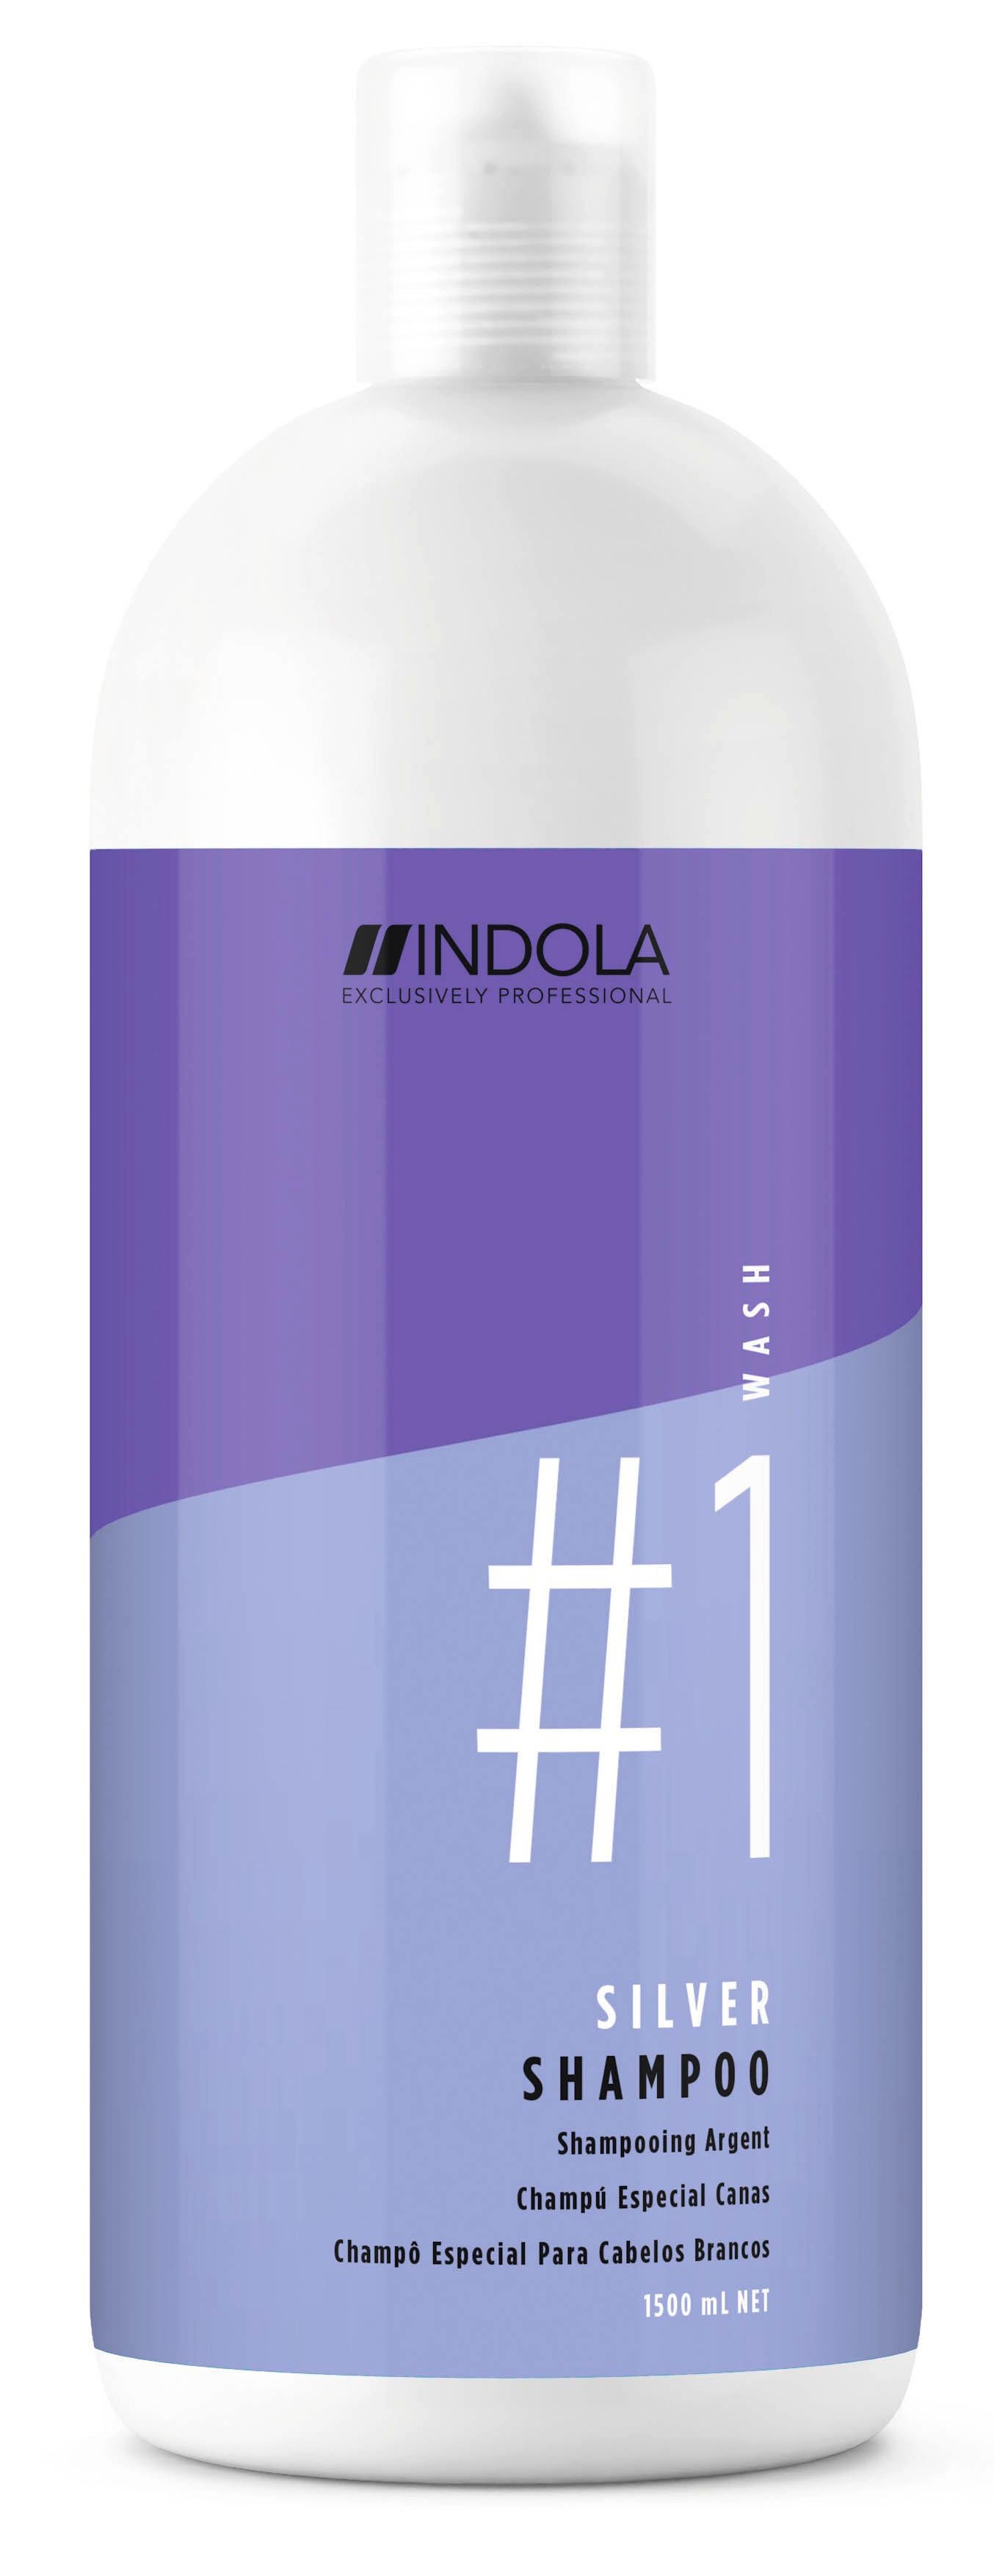 Indola Silver shampoo 1500ml